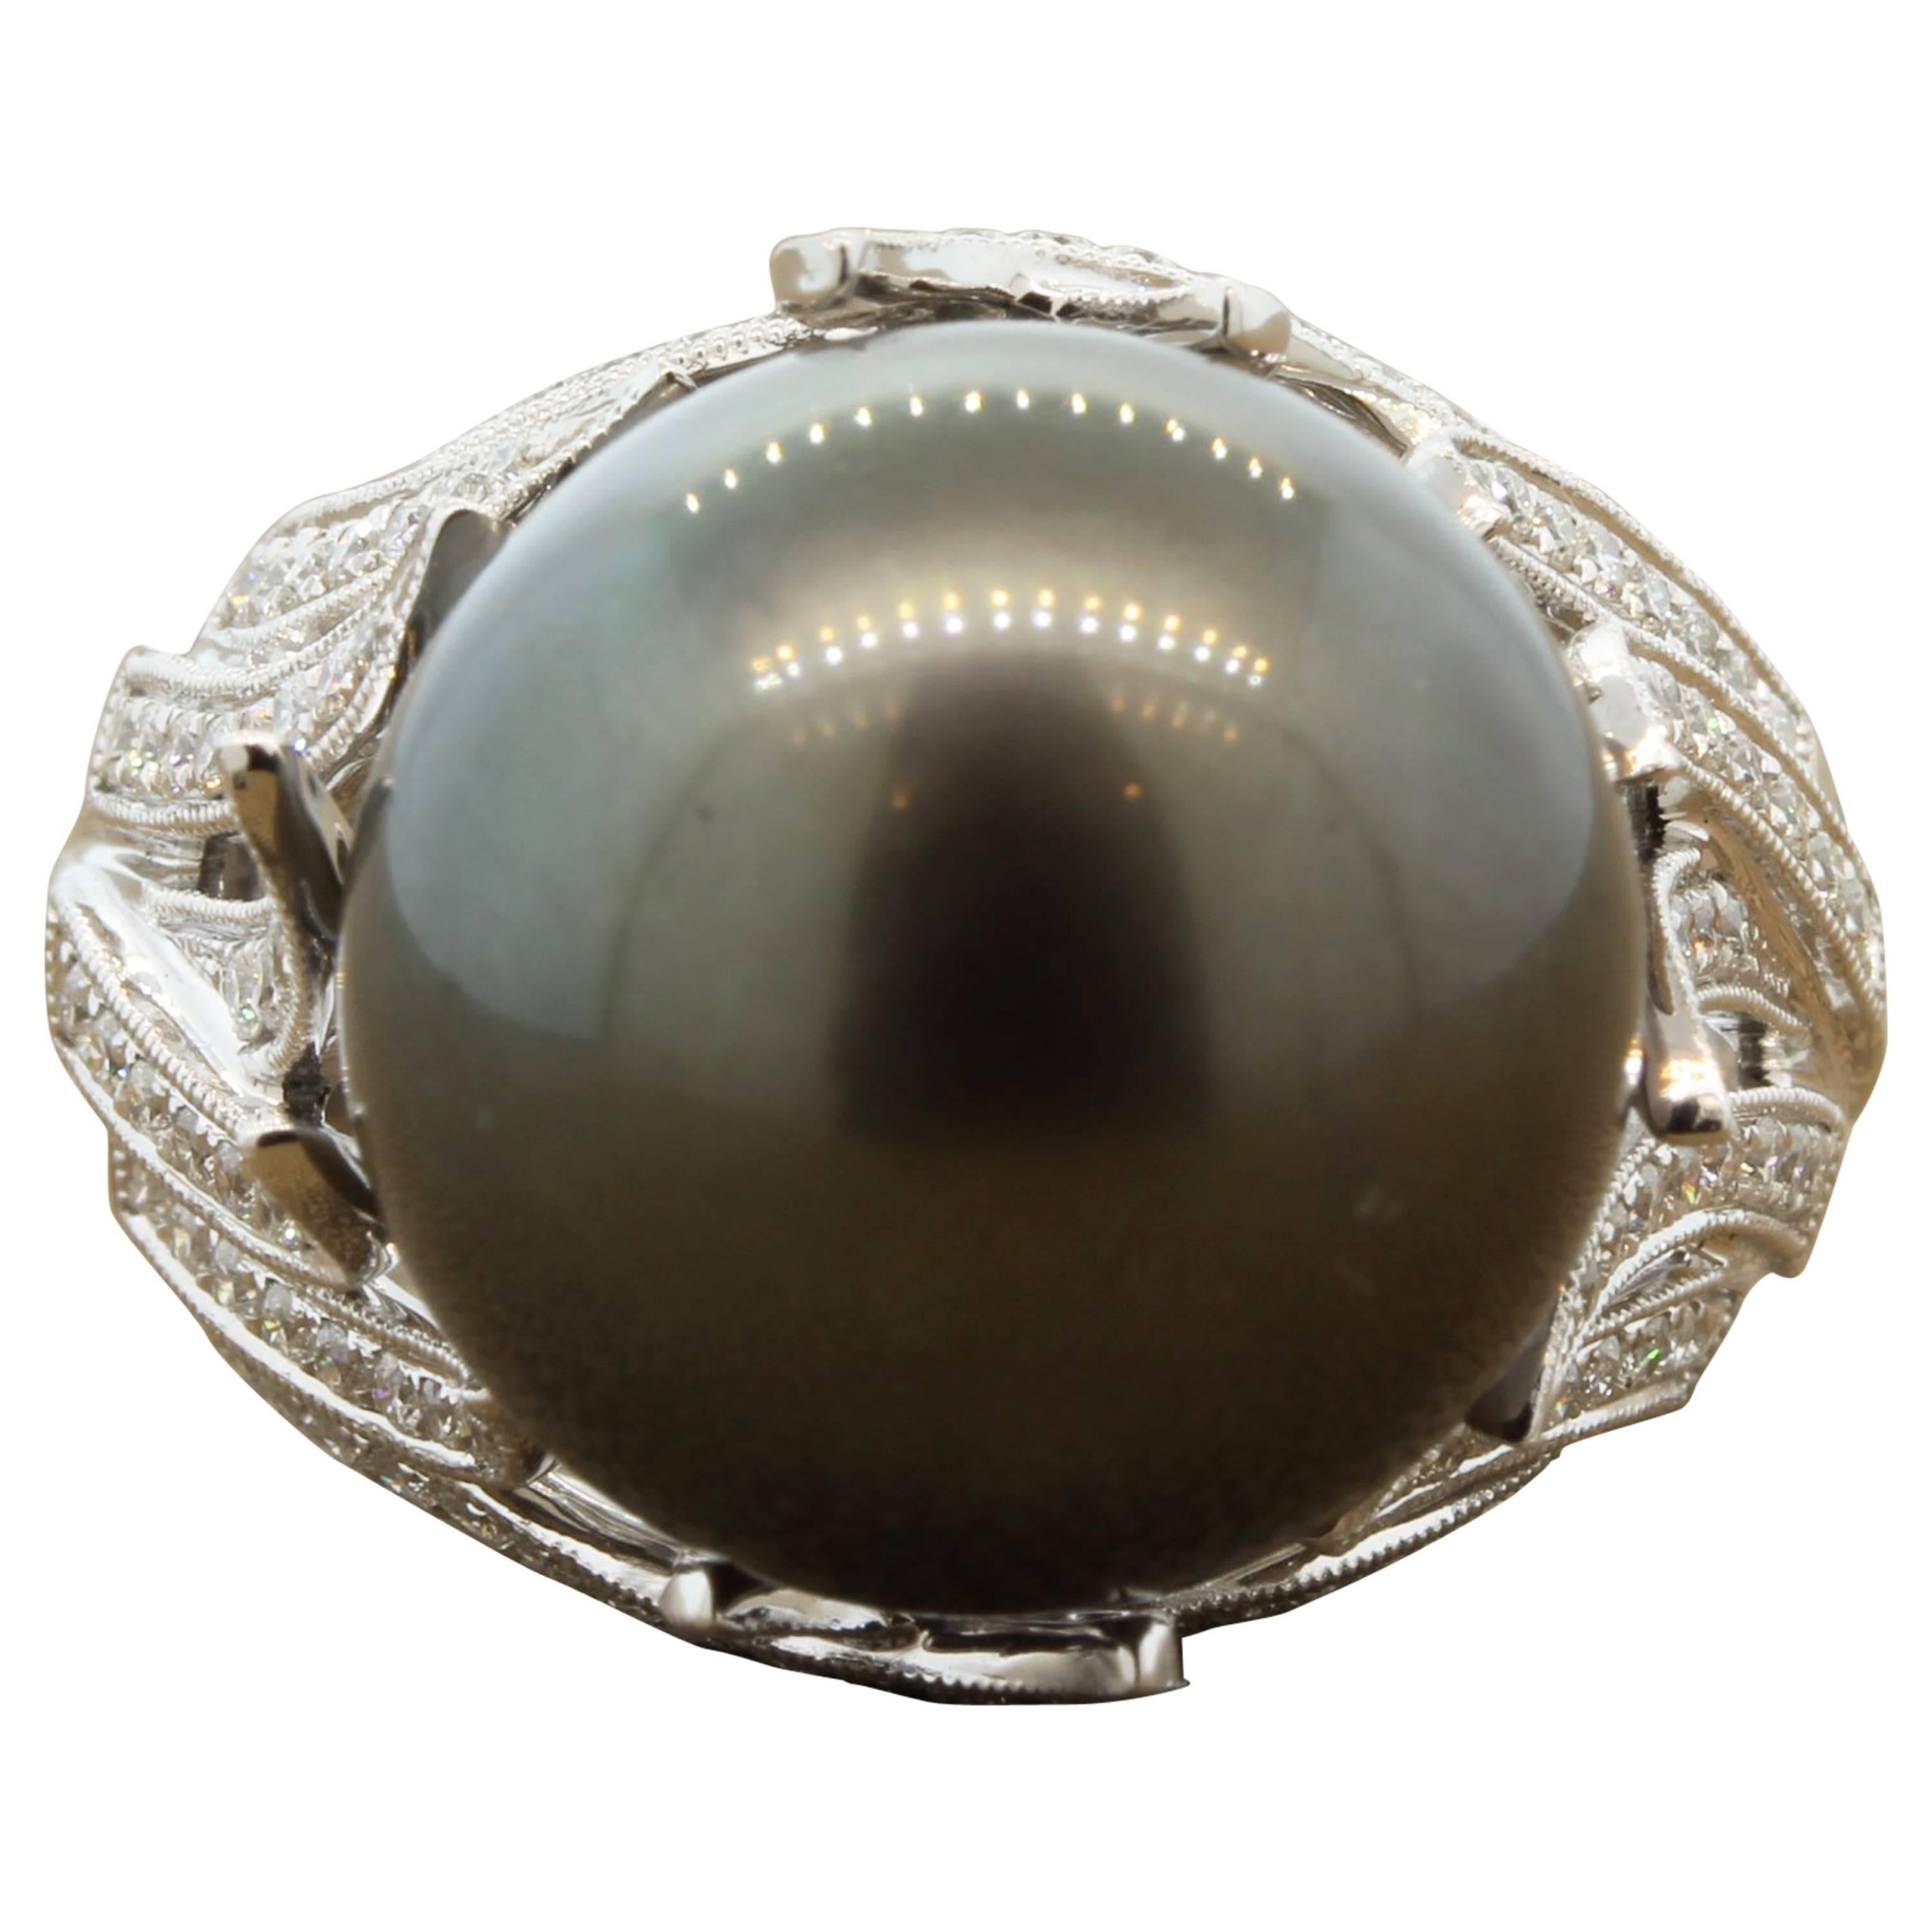 Une bague contemporaine en or ornée d'une perle de Tahiti de 15,5 mm, aussi grande que la venue. Il y a 0,66 carats de diamants de taille ronde sertis dans de l'or blanc 18K. Chaque femme a besoin d'une pièce classique en perles.
Taille 7 
